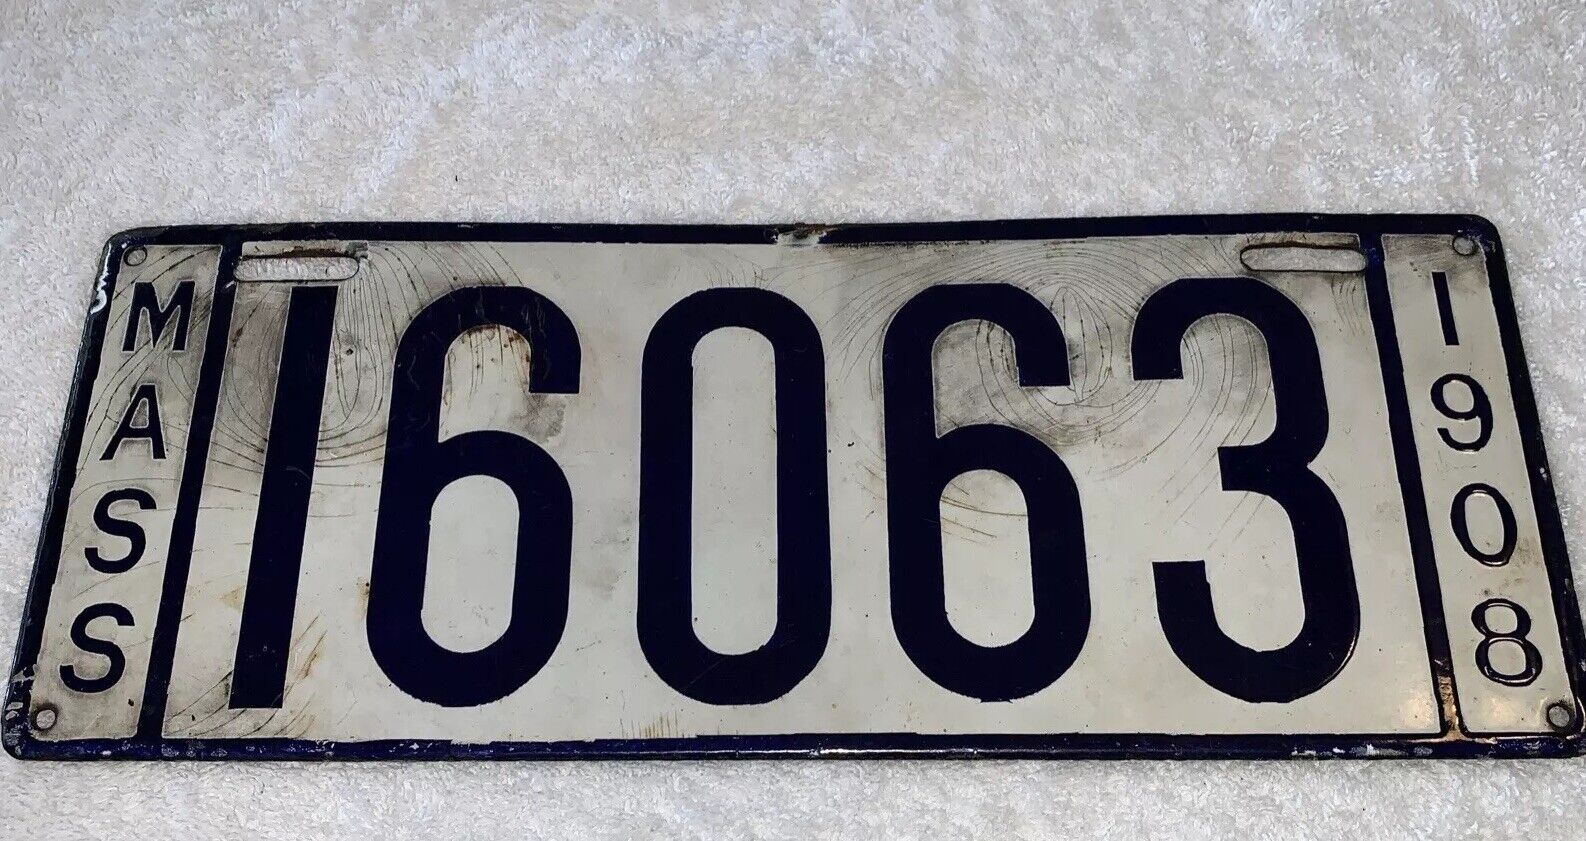 1908 Massachusetts Porcelain license plate Number 16063